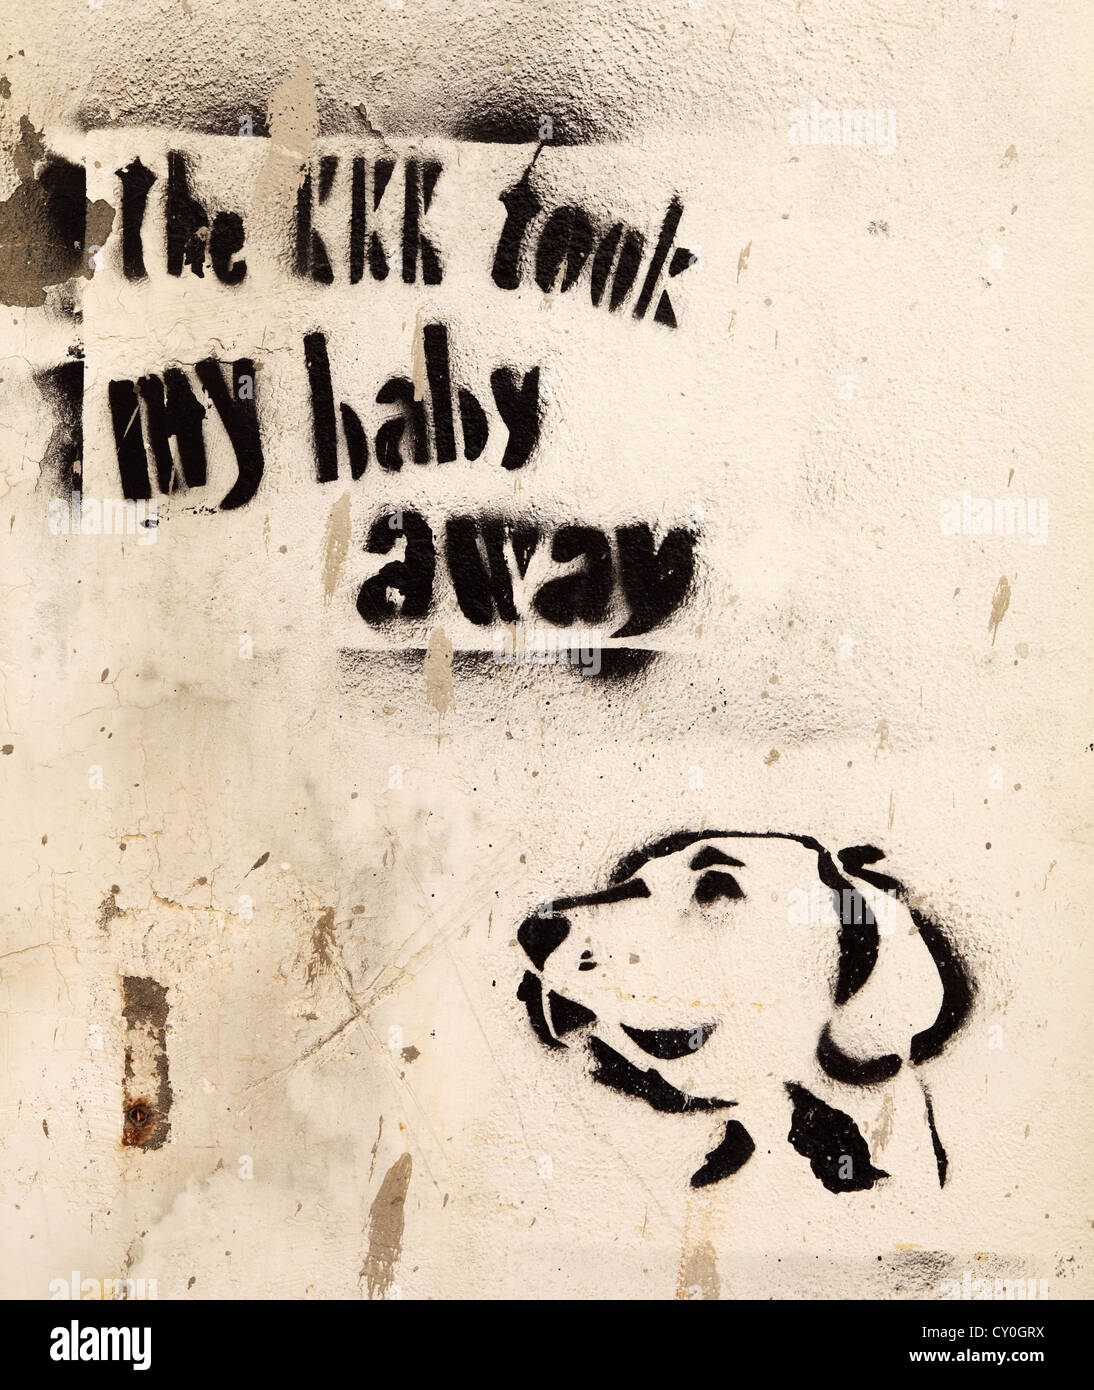 KKK graffitis et song lyrics Rethymnon, Crète, Grèce Banque D'Images